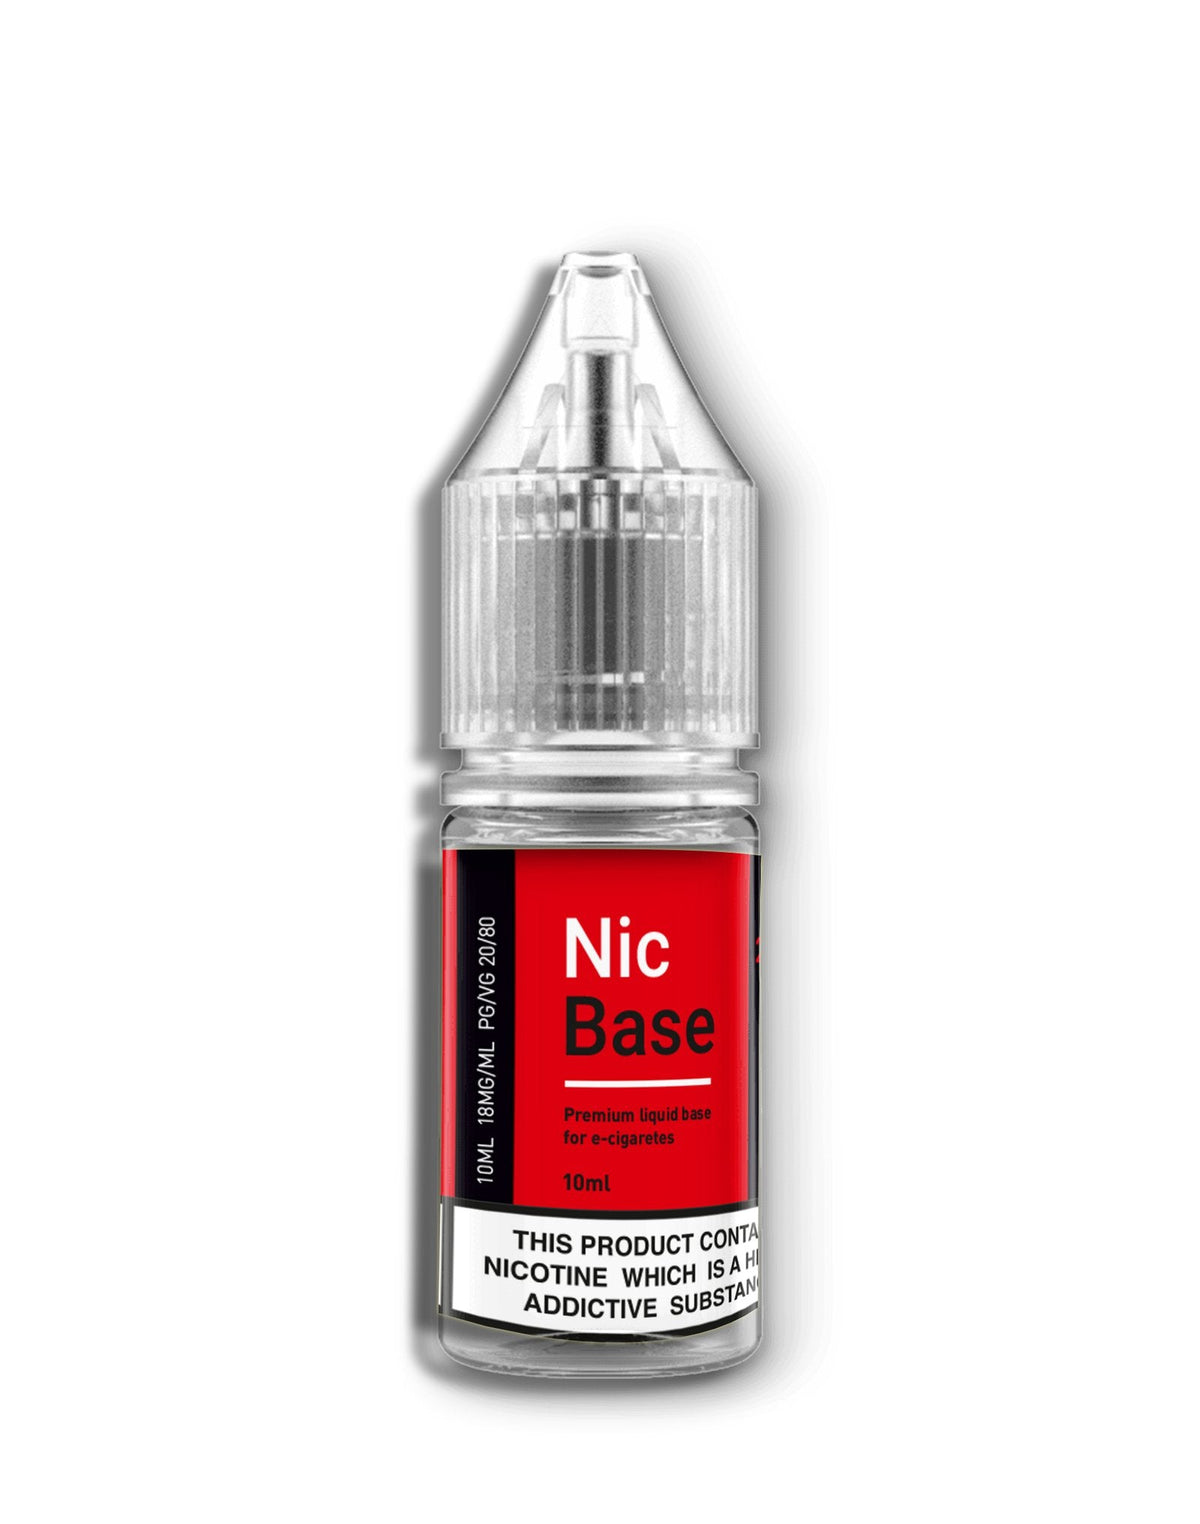 Nic Base Nicotine Shot 18mg 80 Vg 10ml - Nic Base Nicotine Shot 18mg 80 Vg 10ml - Vape Fast UK